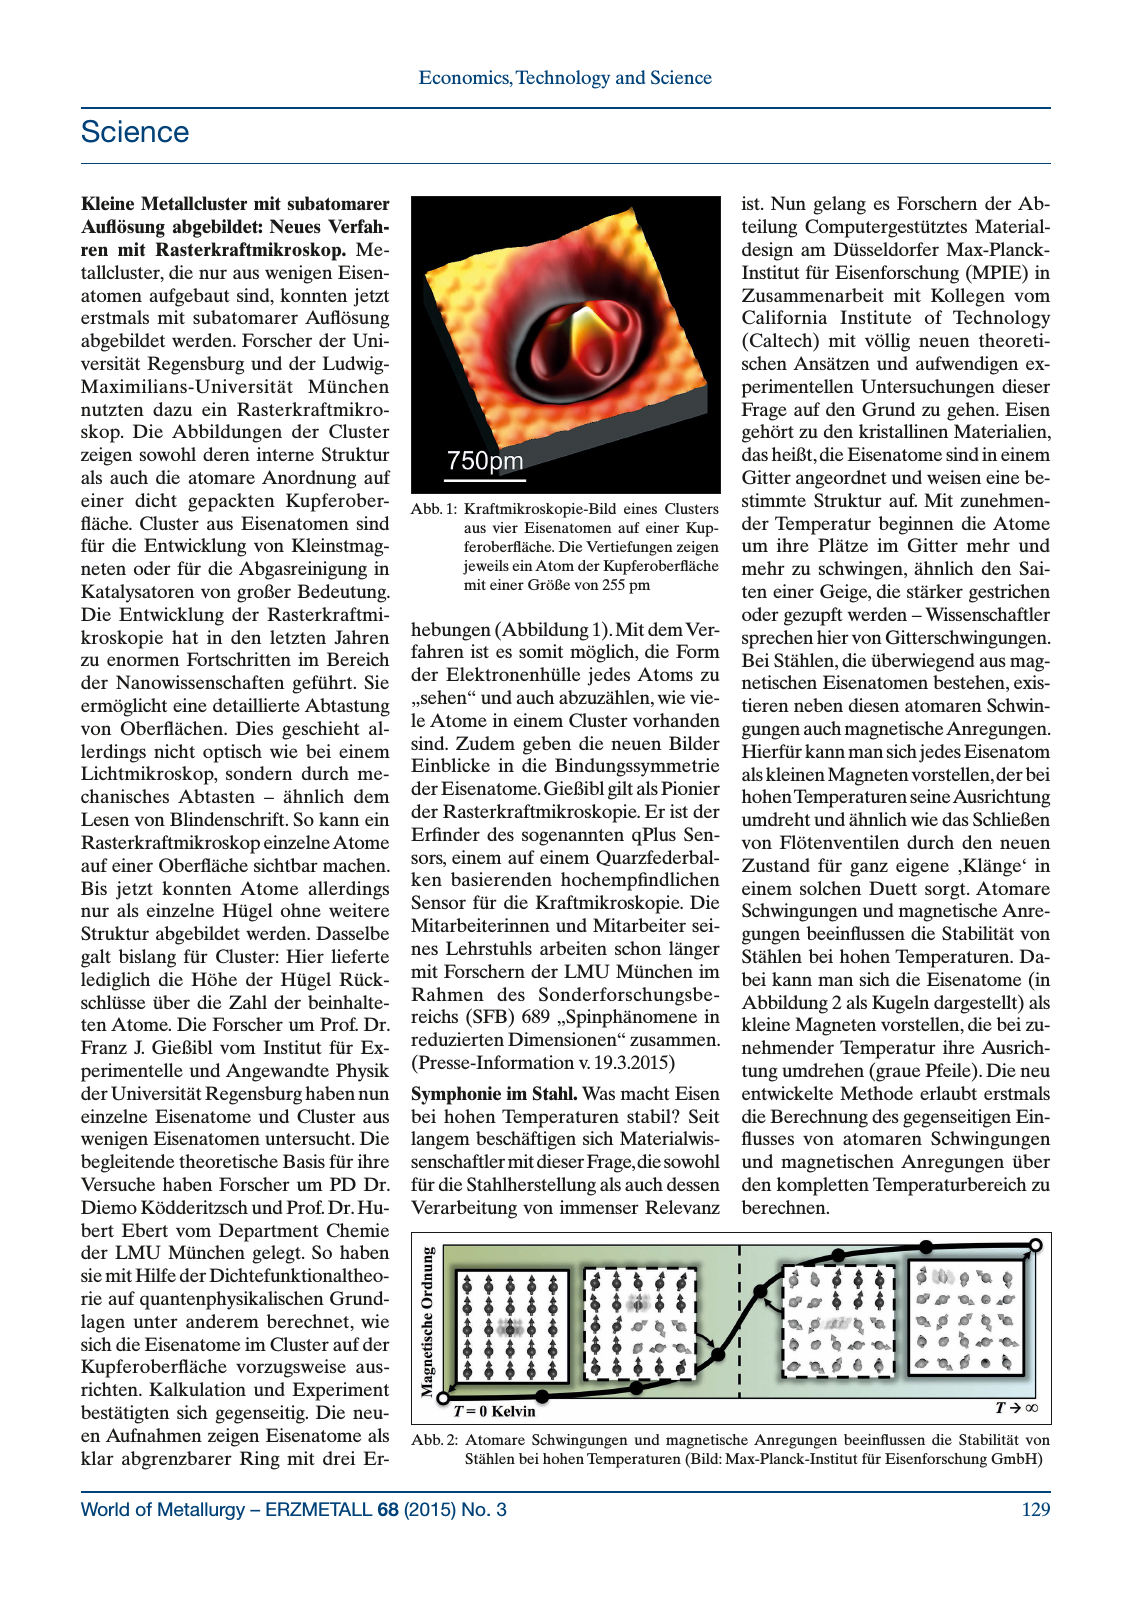 Vorschau World of Metallurgy 3/2015 Seite 23